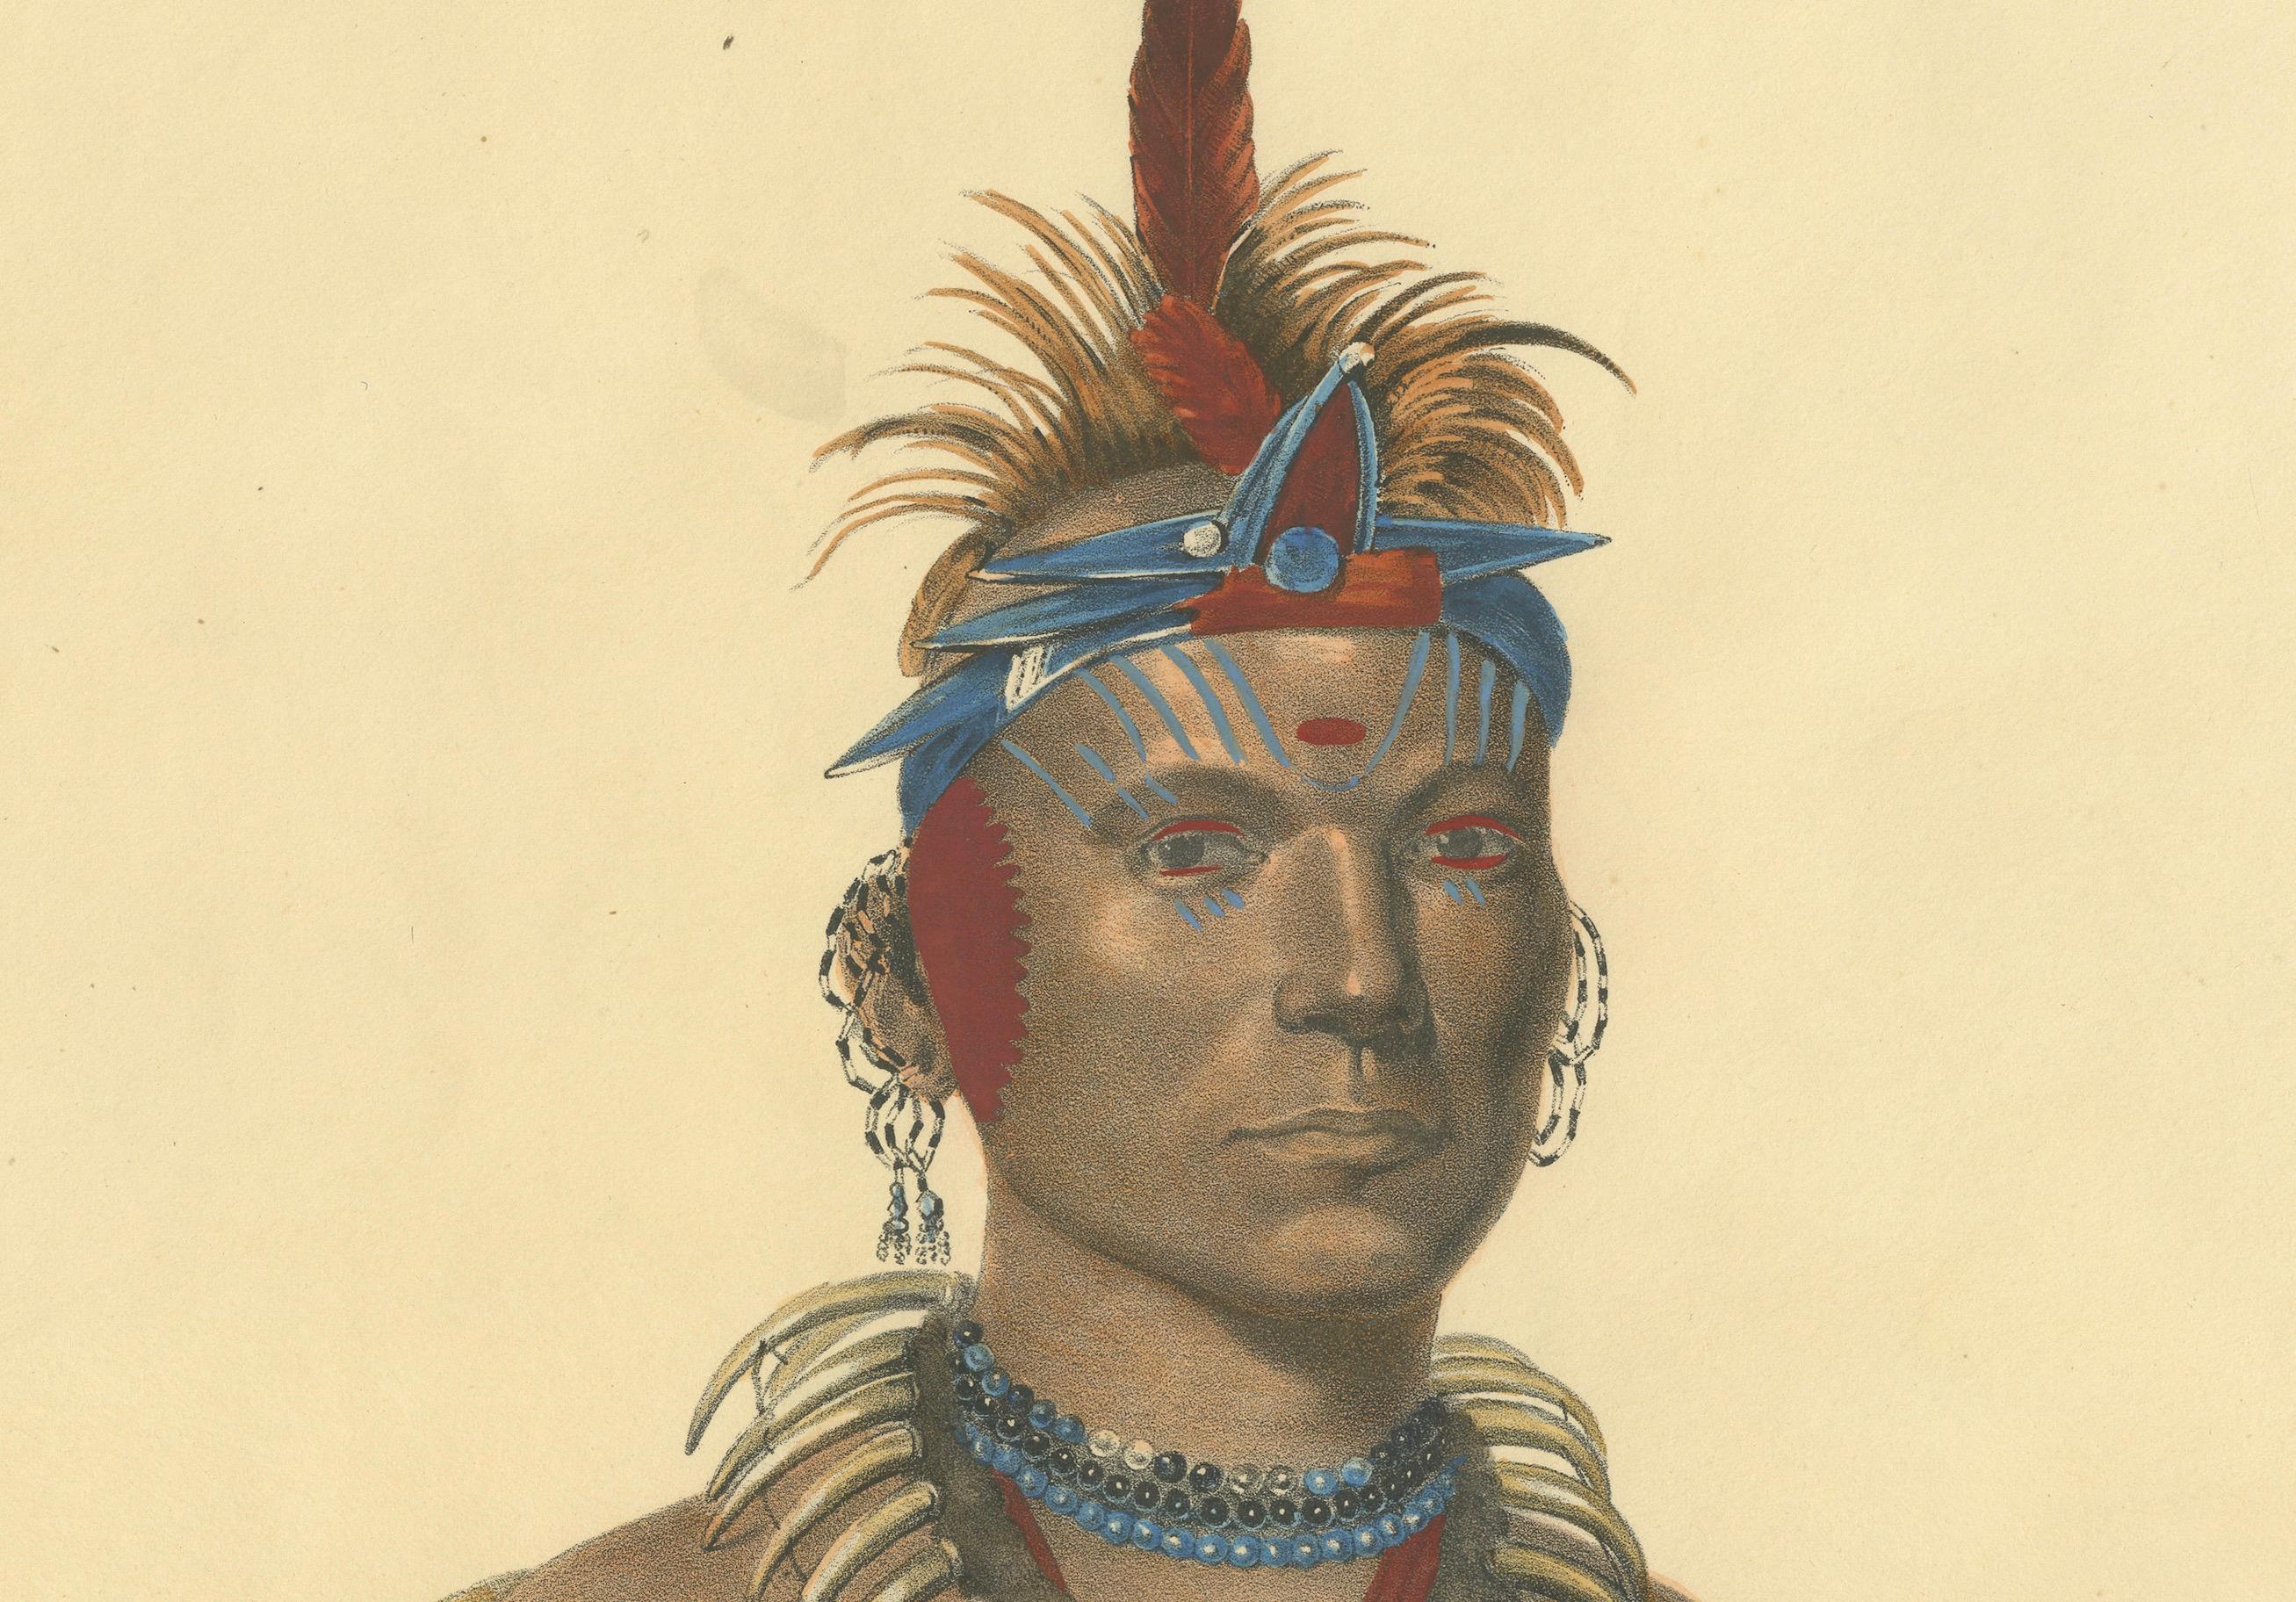 Steward of the Plains: Chono Ca Pe, ein Häuptling der Otoe

Es handelt sich um eine handkolorierte Lithografie von Chono Ca Pe, einem Häuptling der Otoe (oft auch Ottoe geschrieben), aus der 